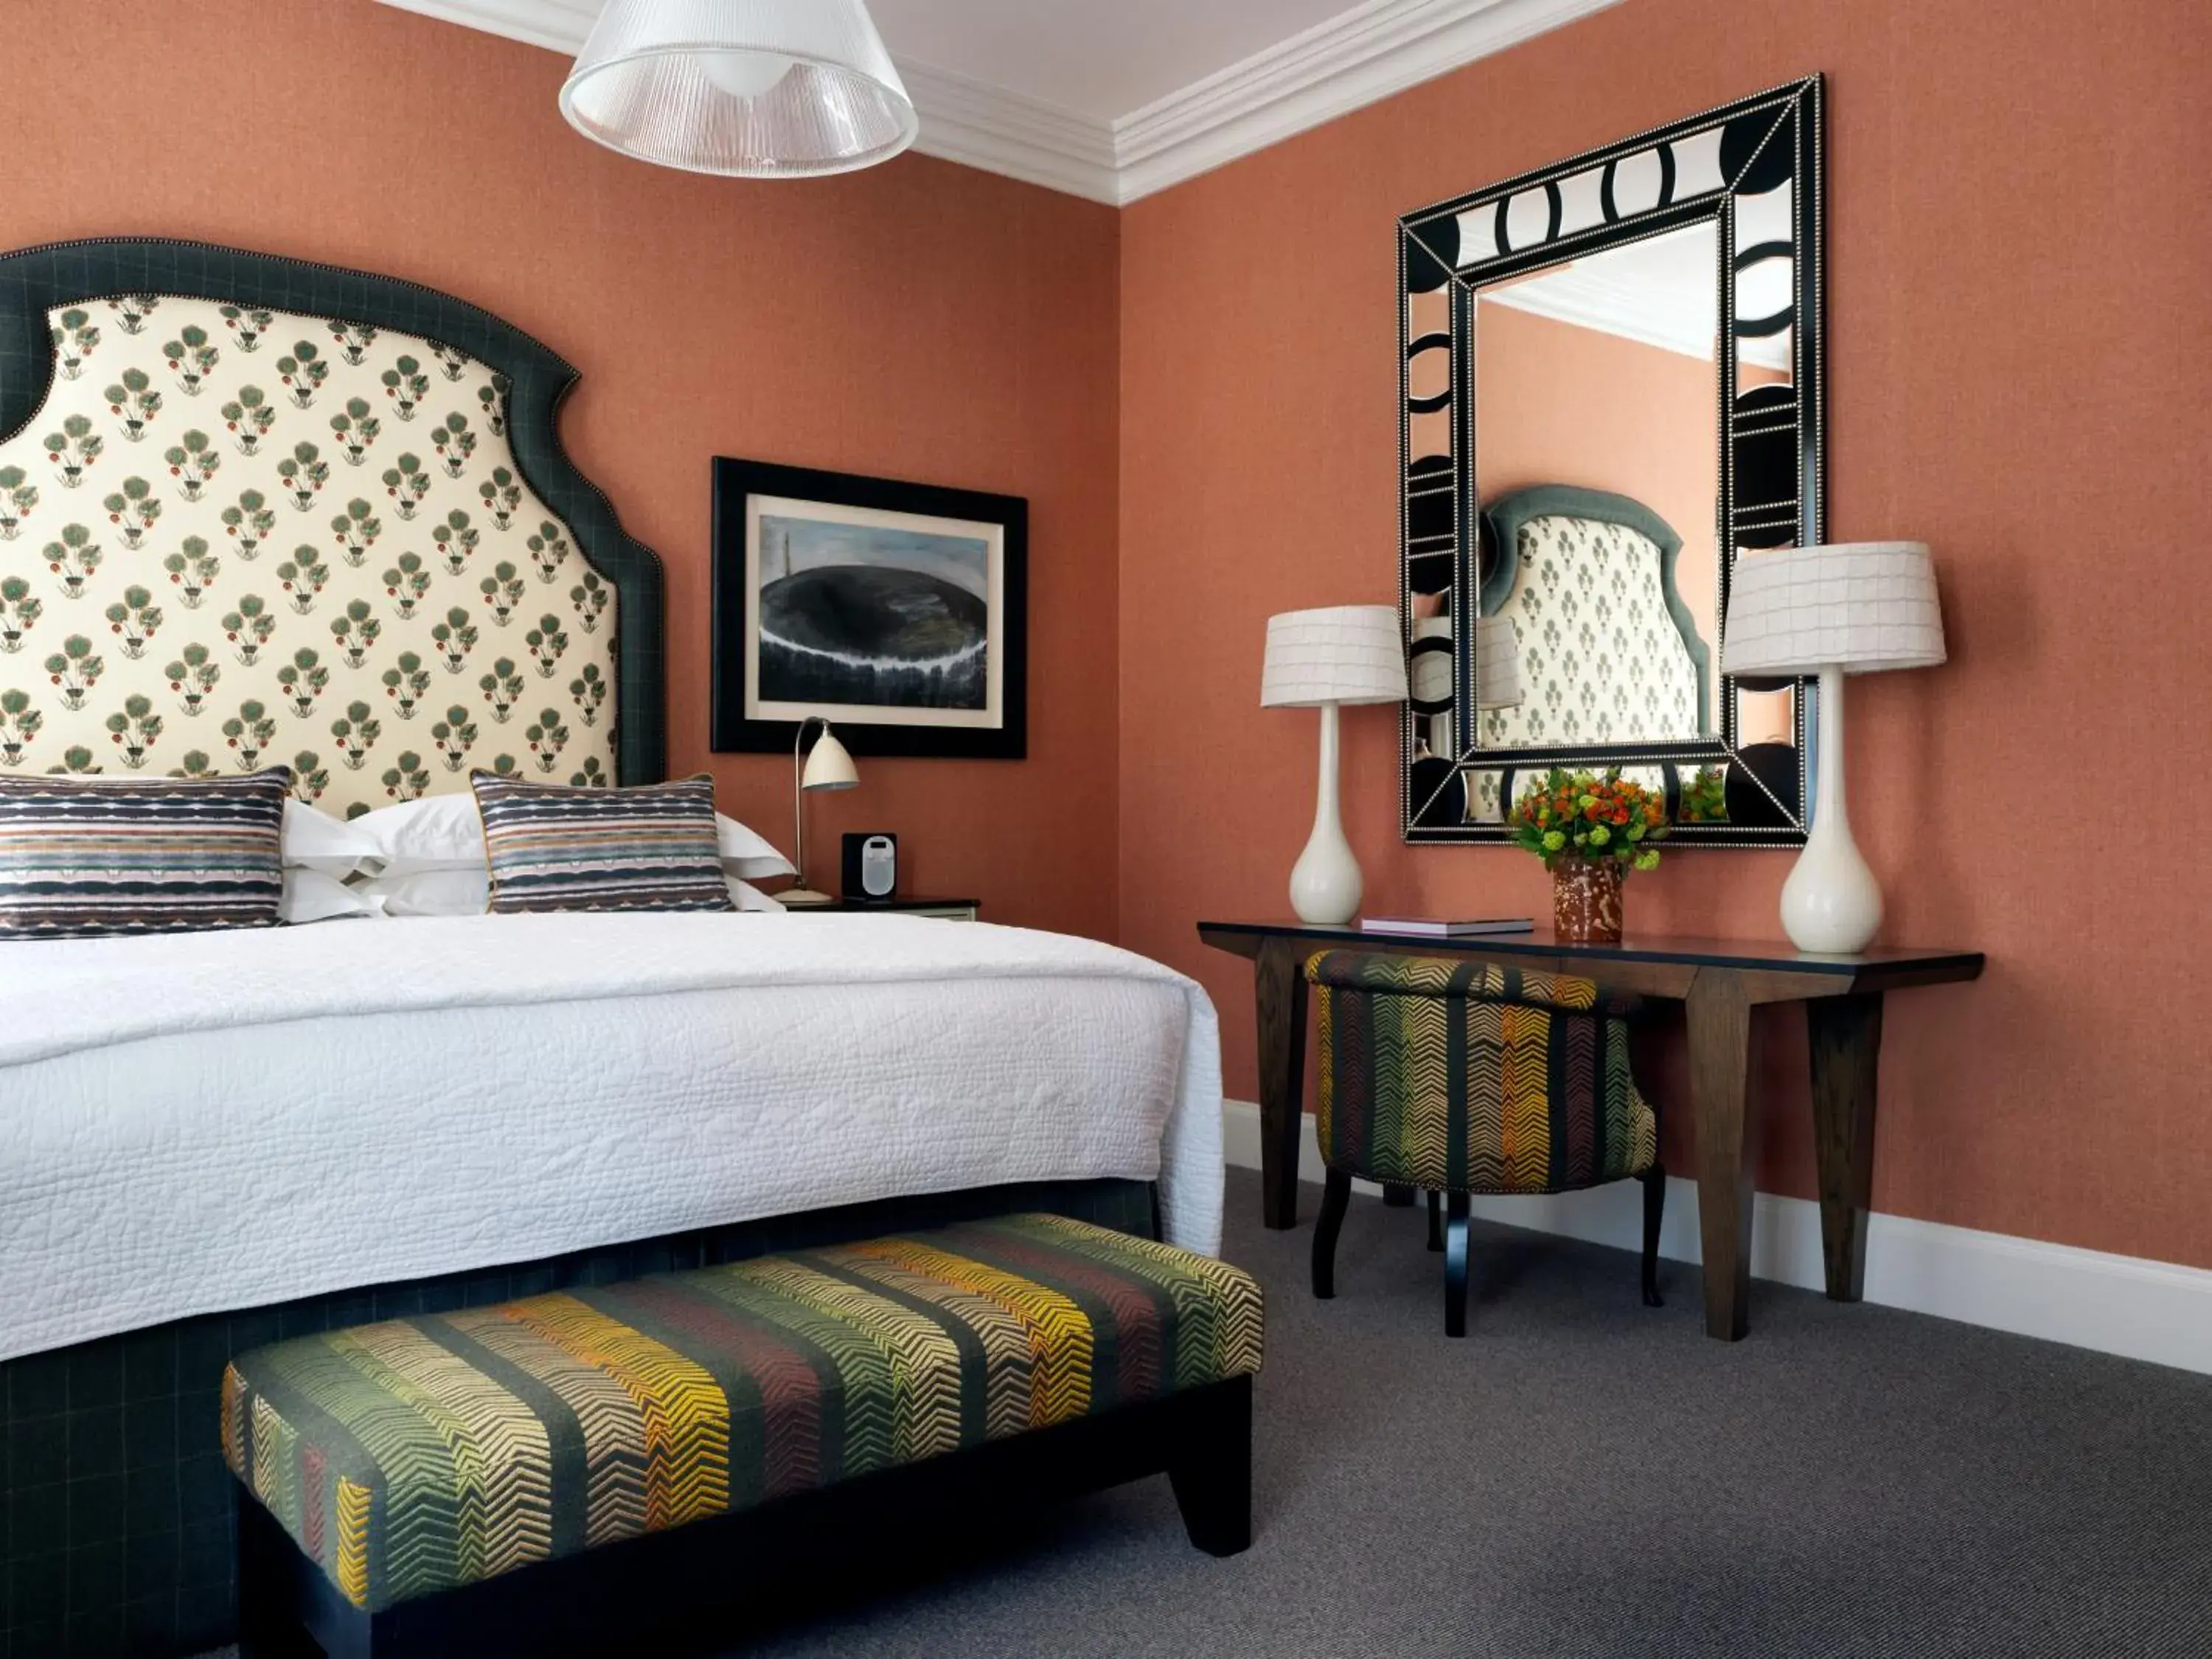 Bed in Haymarket Hotel, Firmdale Hotels